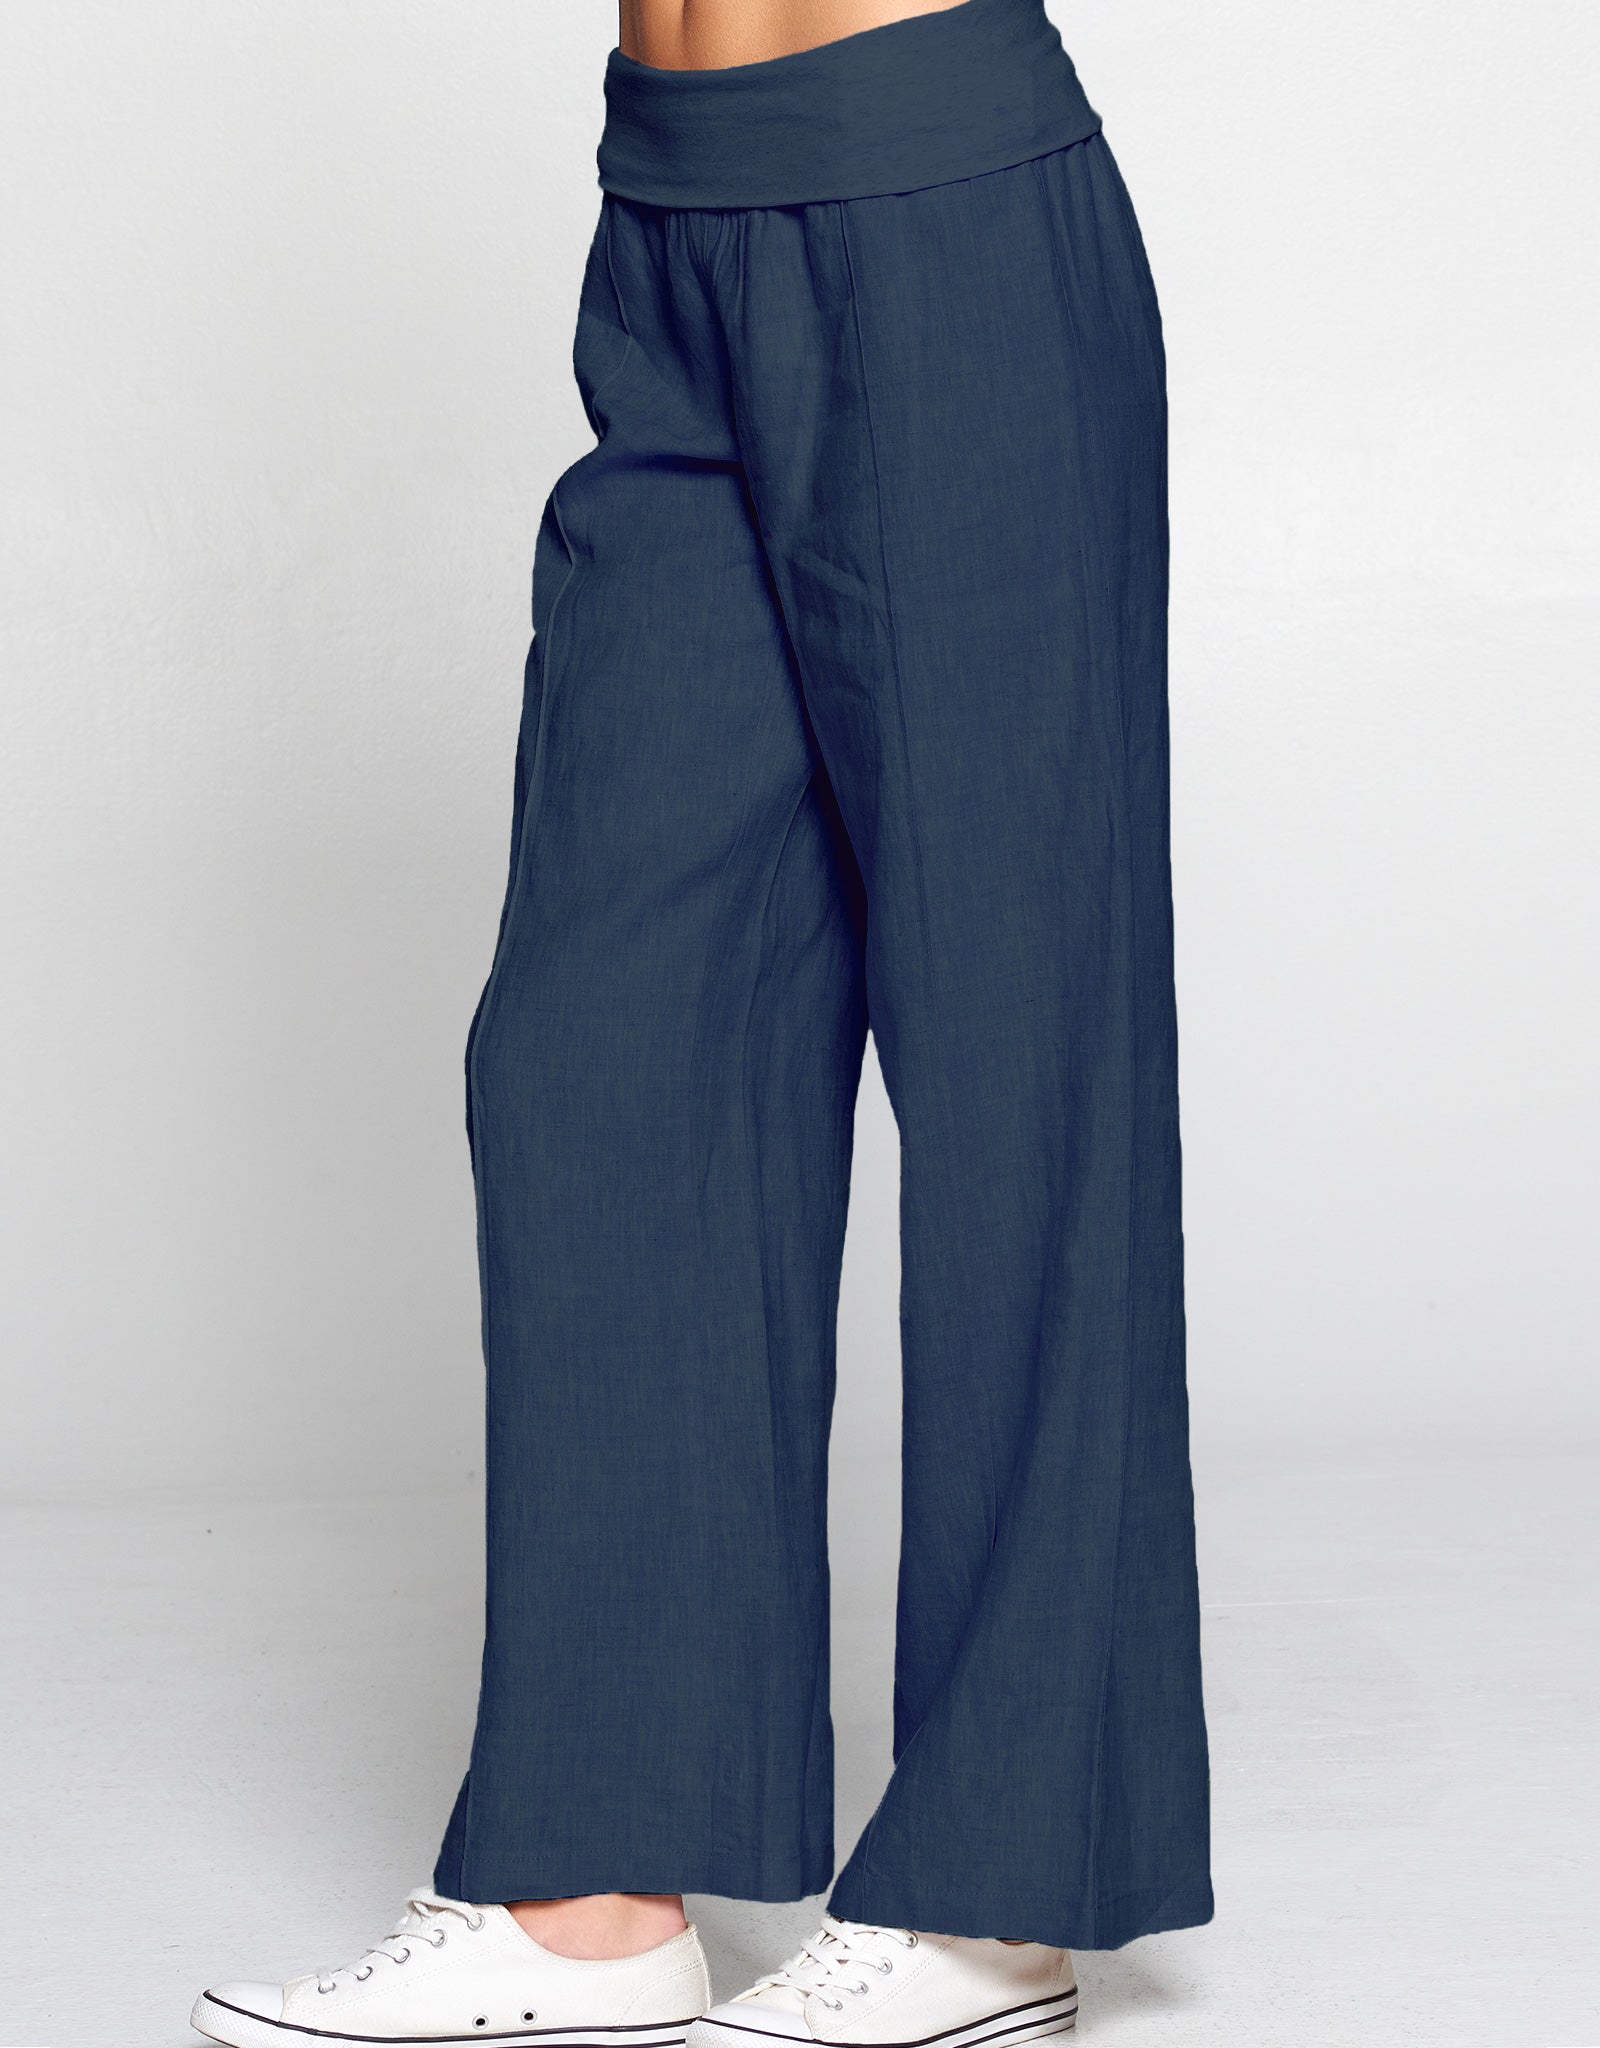 Linen Foldover Waist Pant, 5 Colors